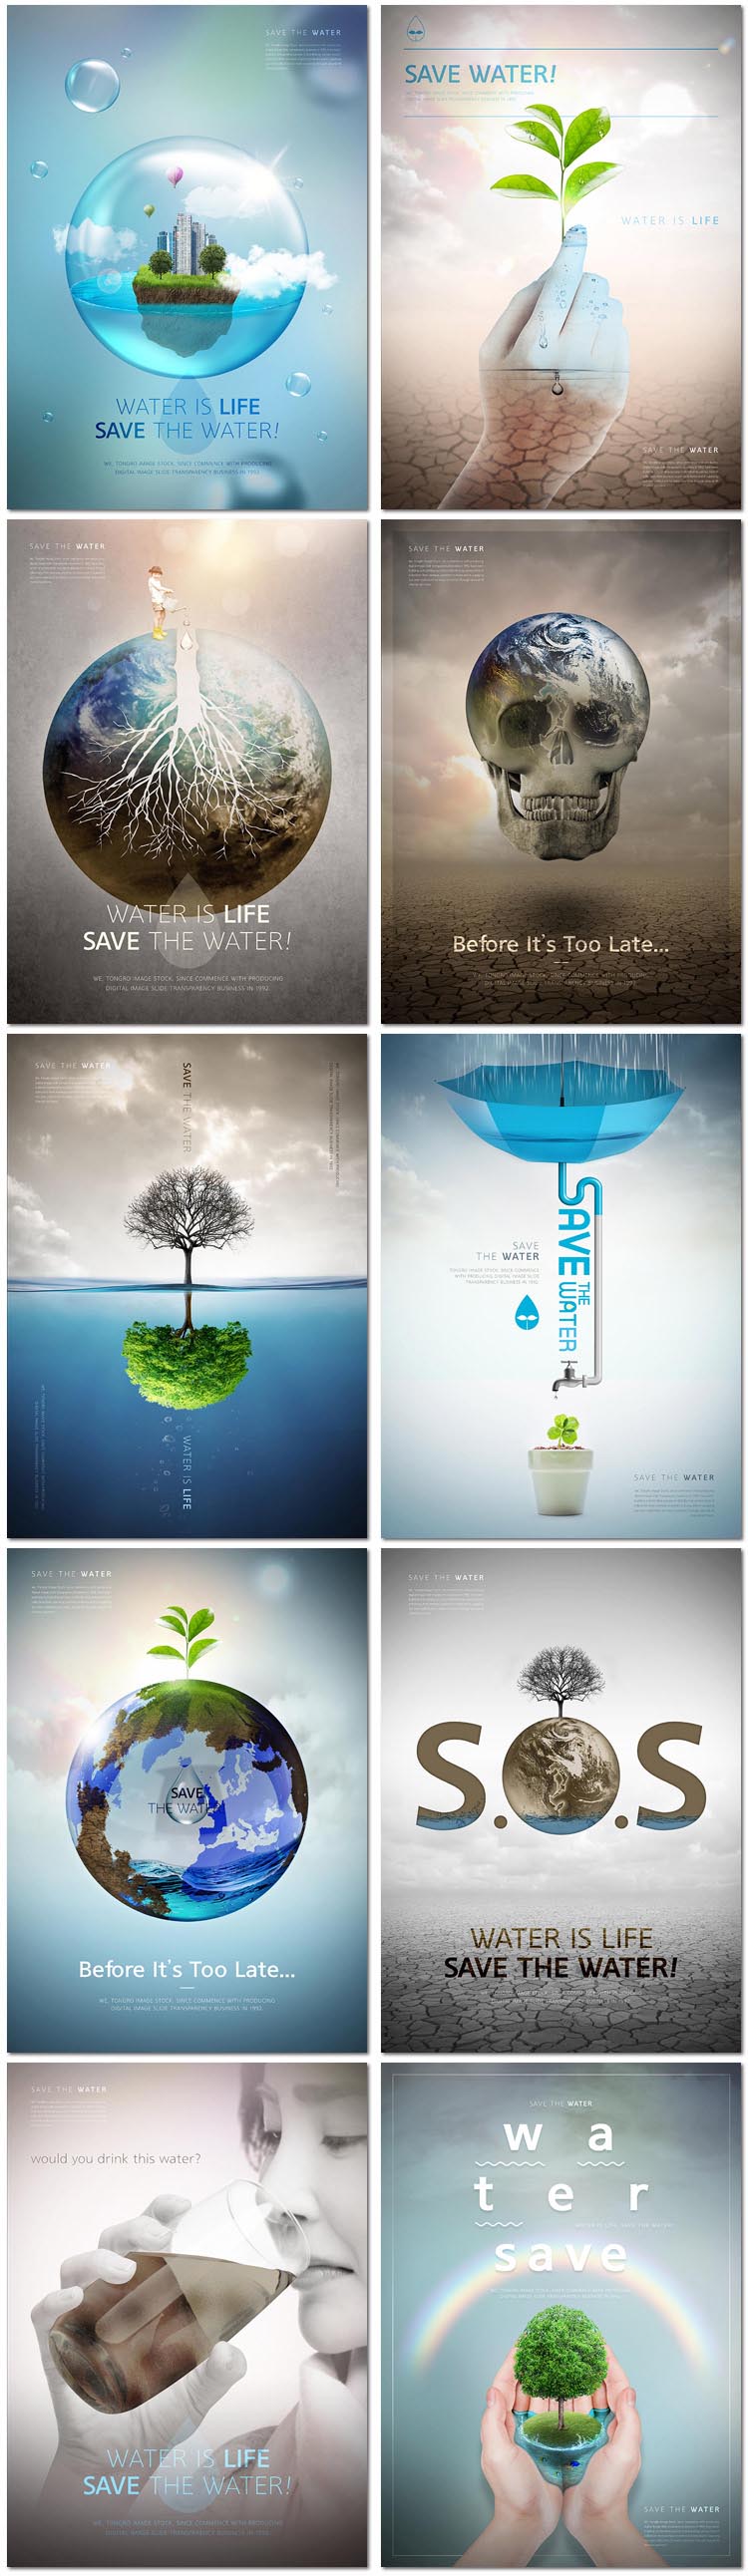 10张绿色地球日爱护家园植树环保科技公益广告海报psd模板设计素材